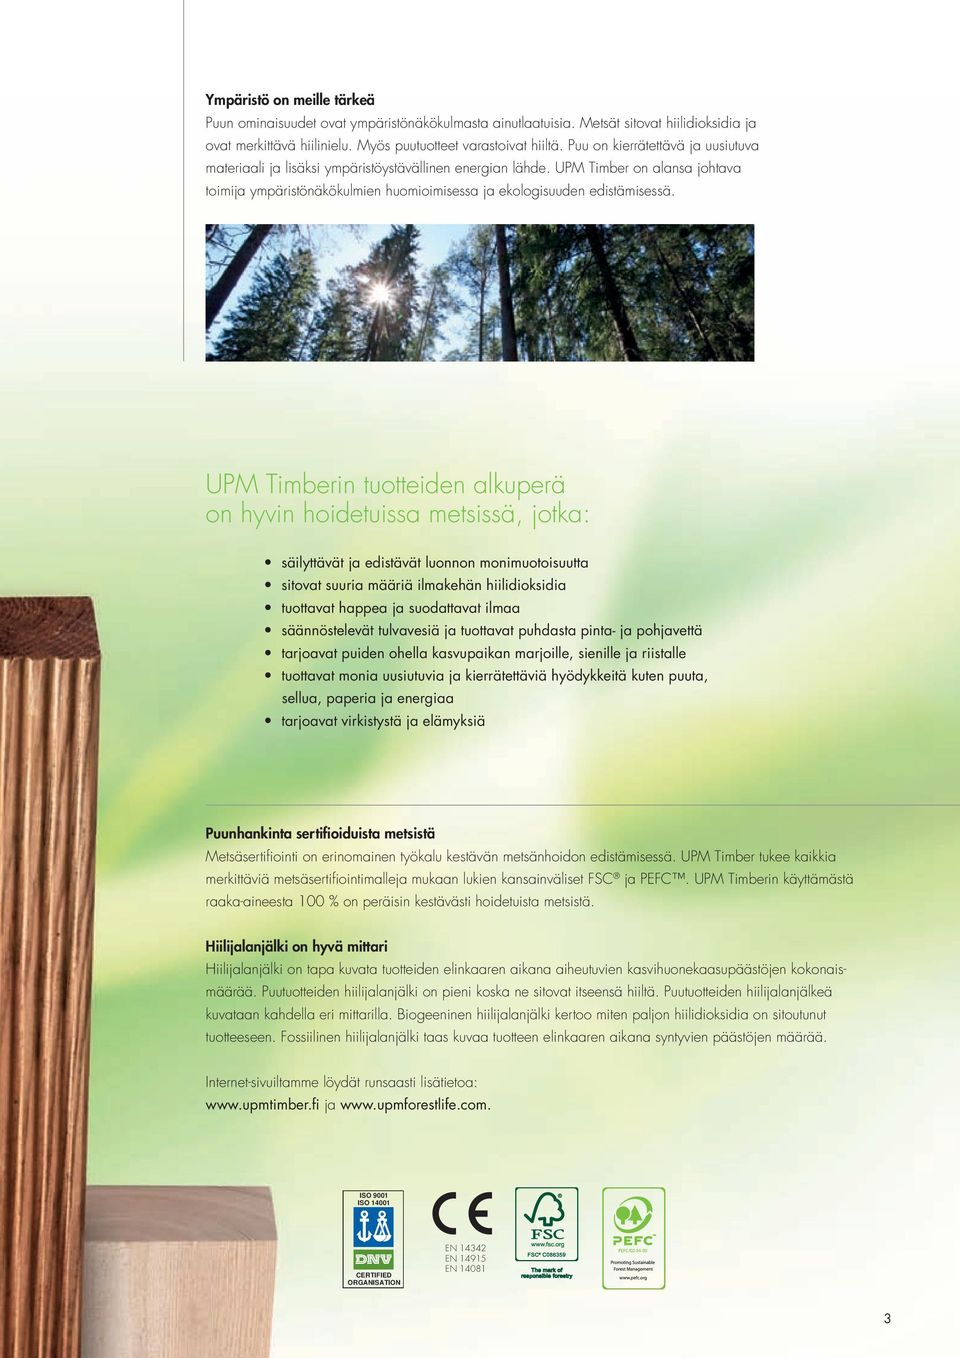 UPM Timberin tuotteiden alkuperä on hyvin hoidetuissa metsissä, jotka: säilyttävät ja edistävät luonnon monimuotoisuutta sitovat suuria määriä ilmakehän hiilidioksidia tuottavat happea ja suodattavat